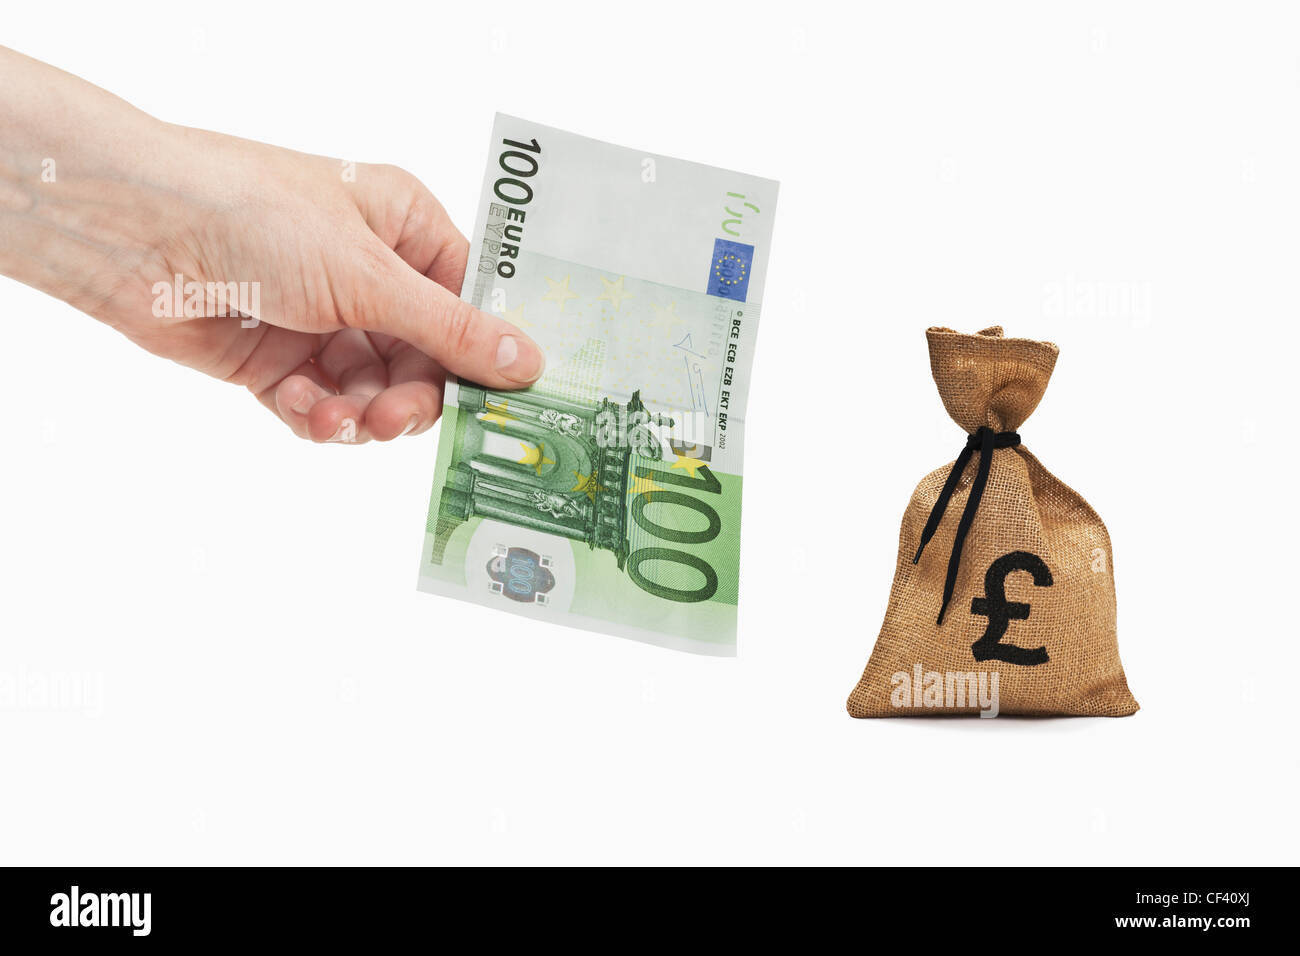 Un Euro 100 bill è tenuto in mano. Nelle vicinanze si trova un sacco di denaro con una libbra di cambio segno. Foto Stock